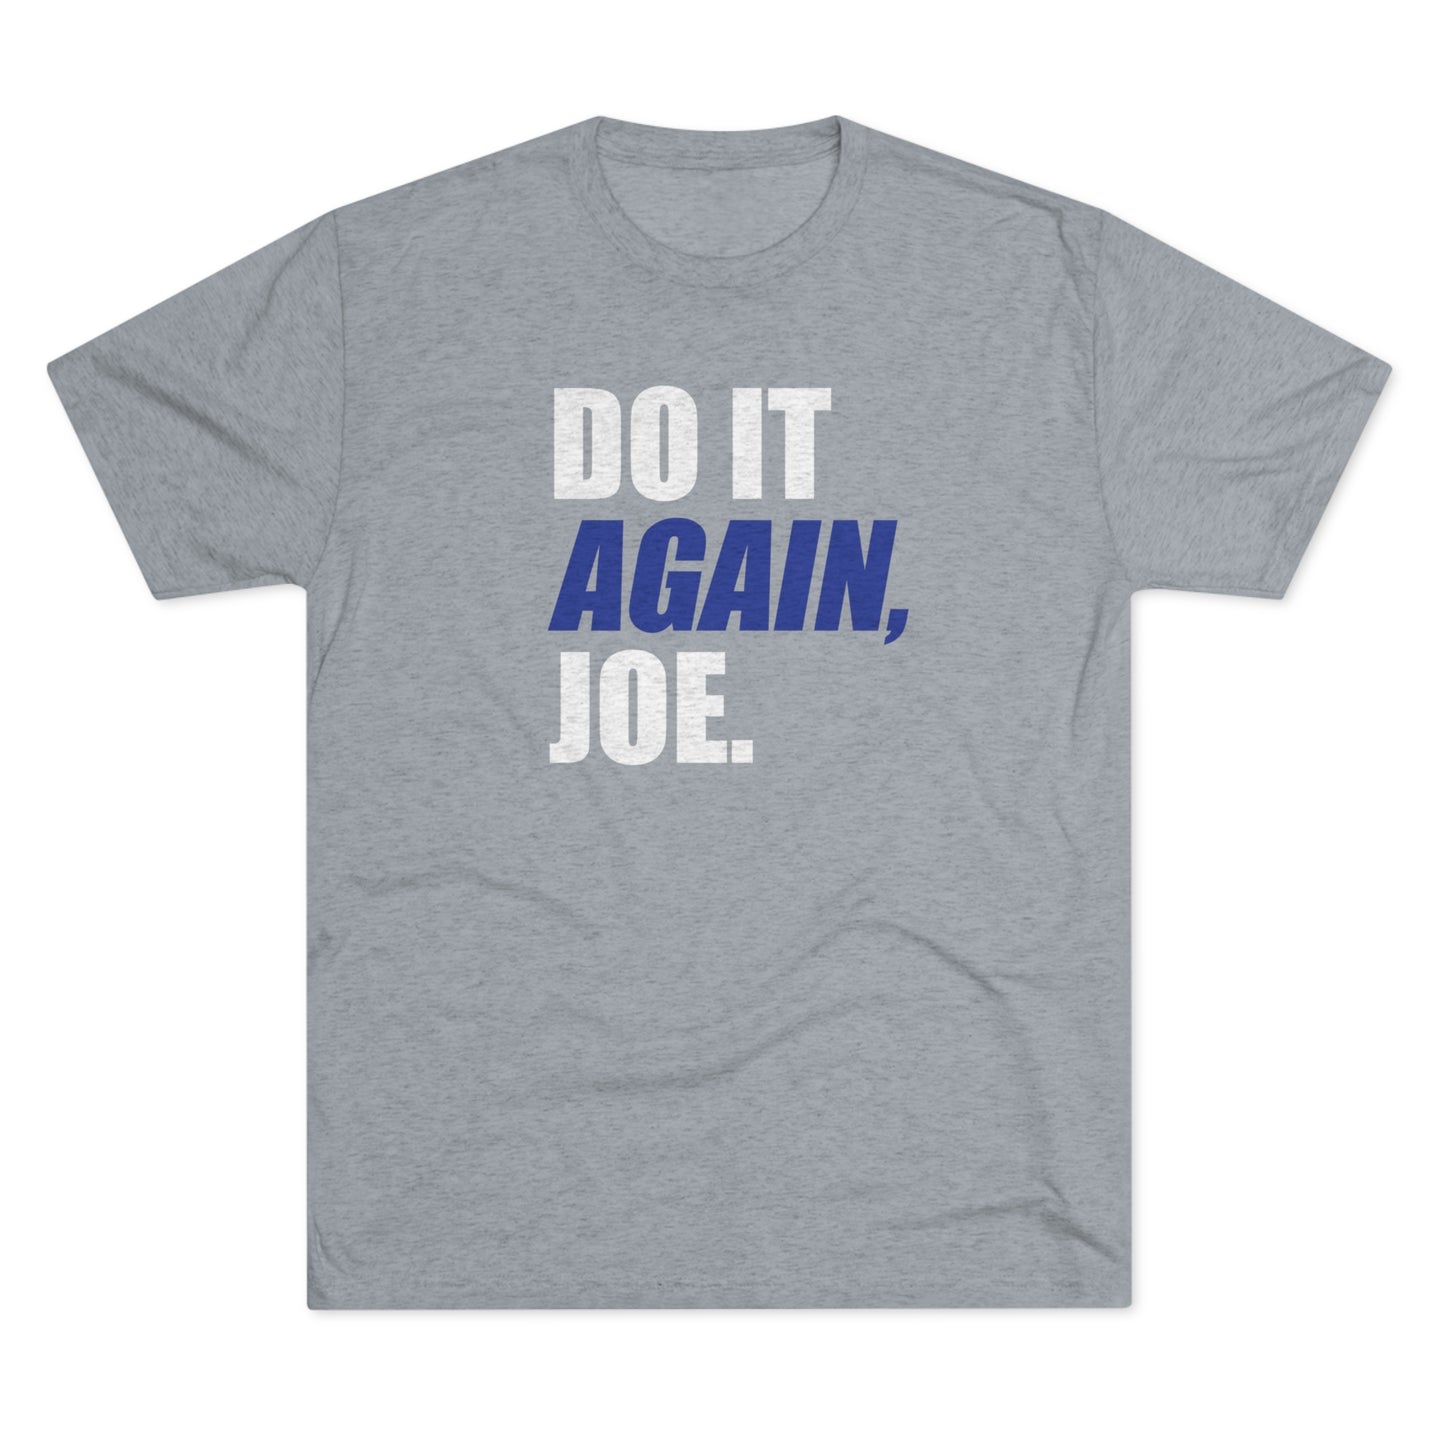 DO IT AGAIN, JOE